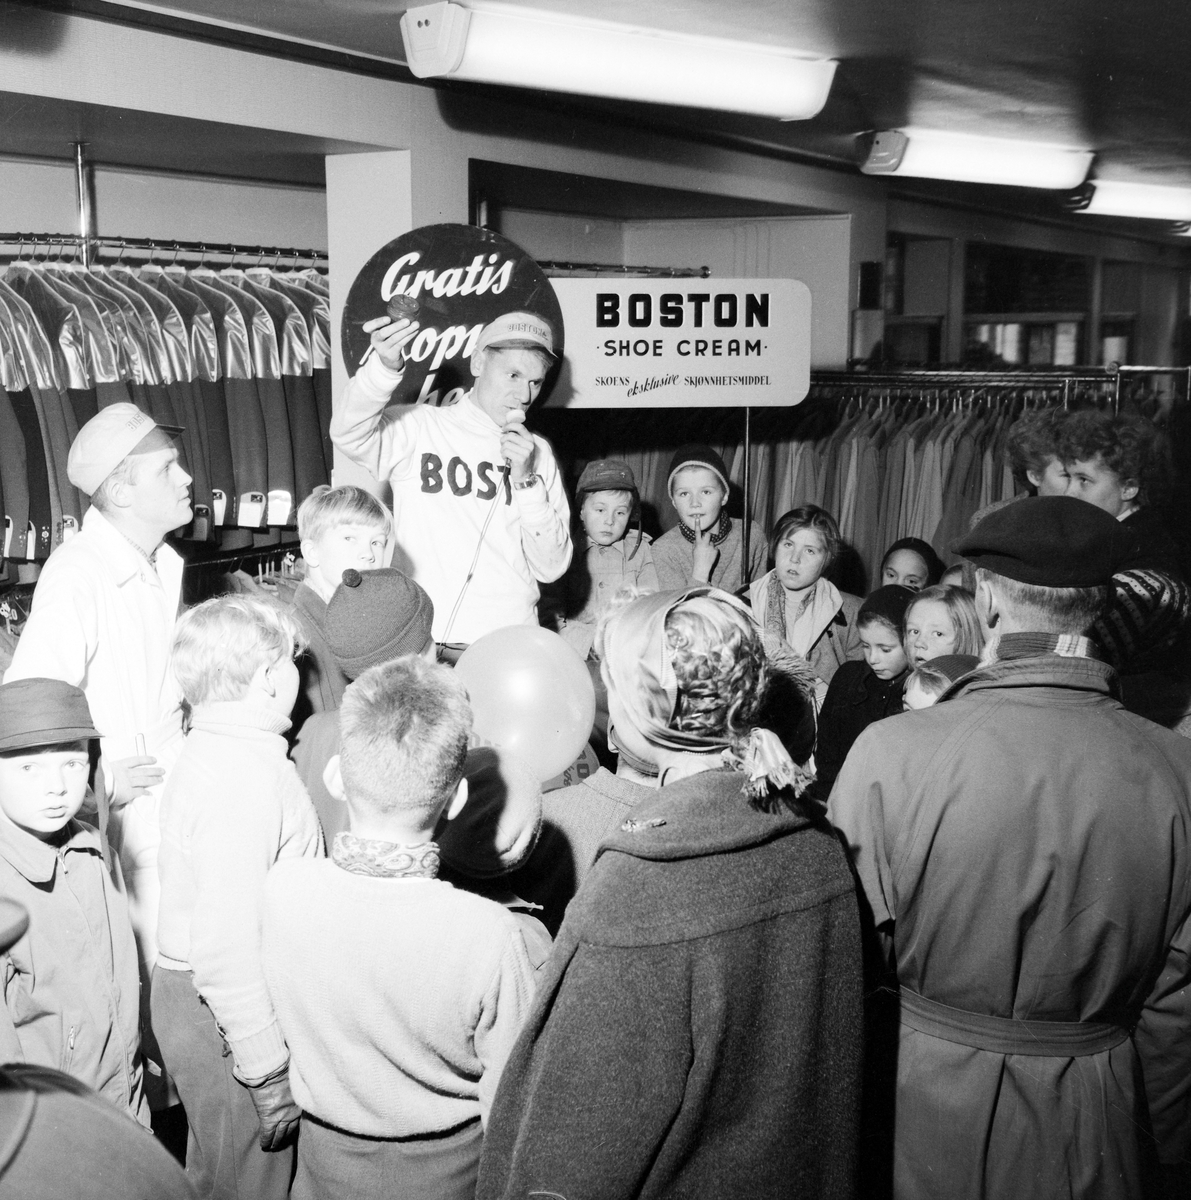 Demonstrasjon av Boston skokrem hos A. Dahl & Co.